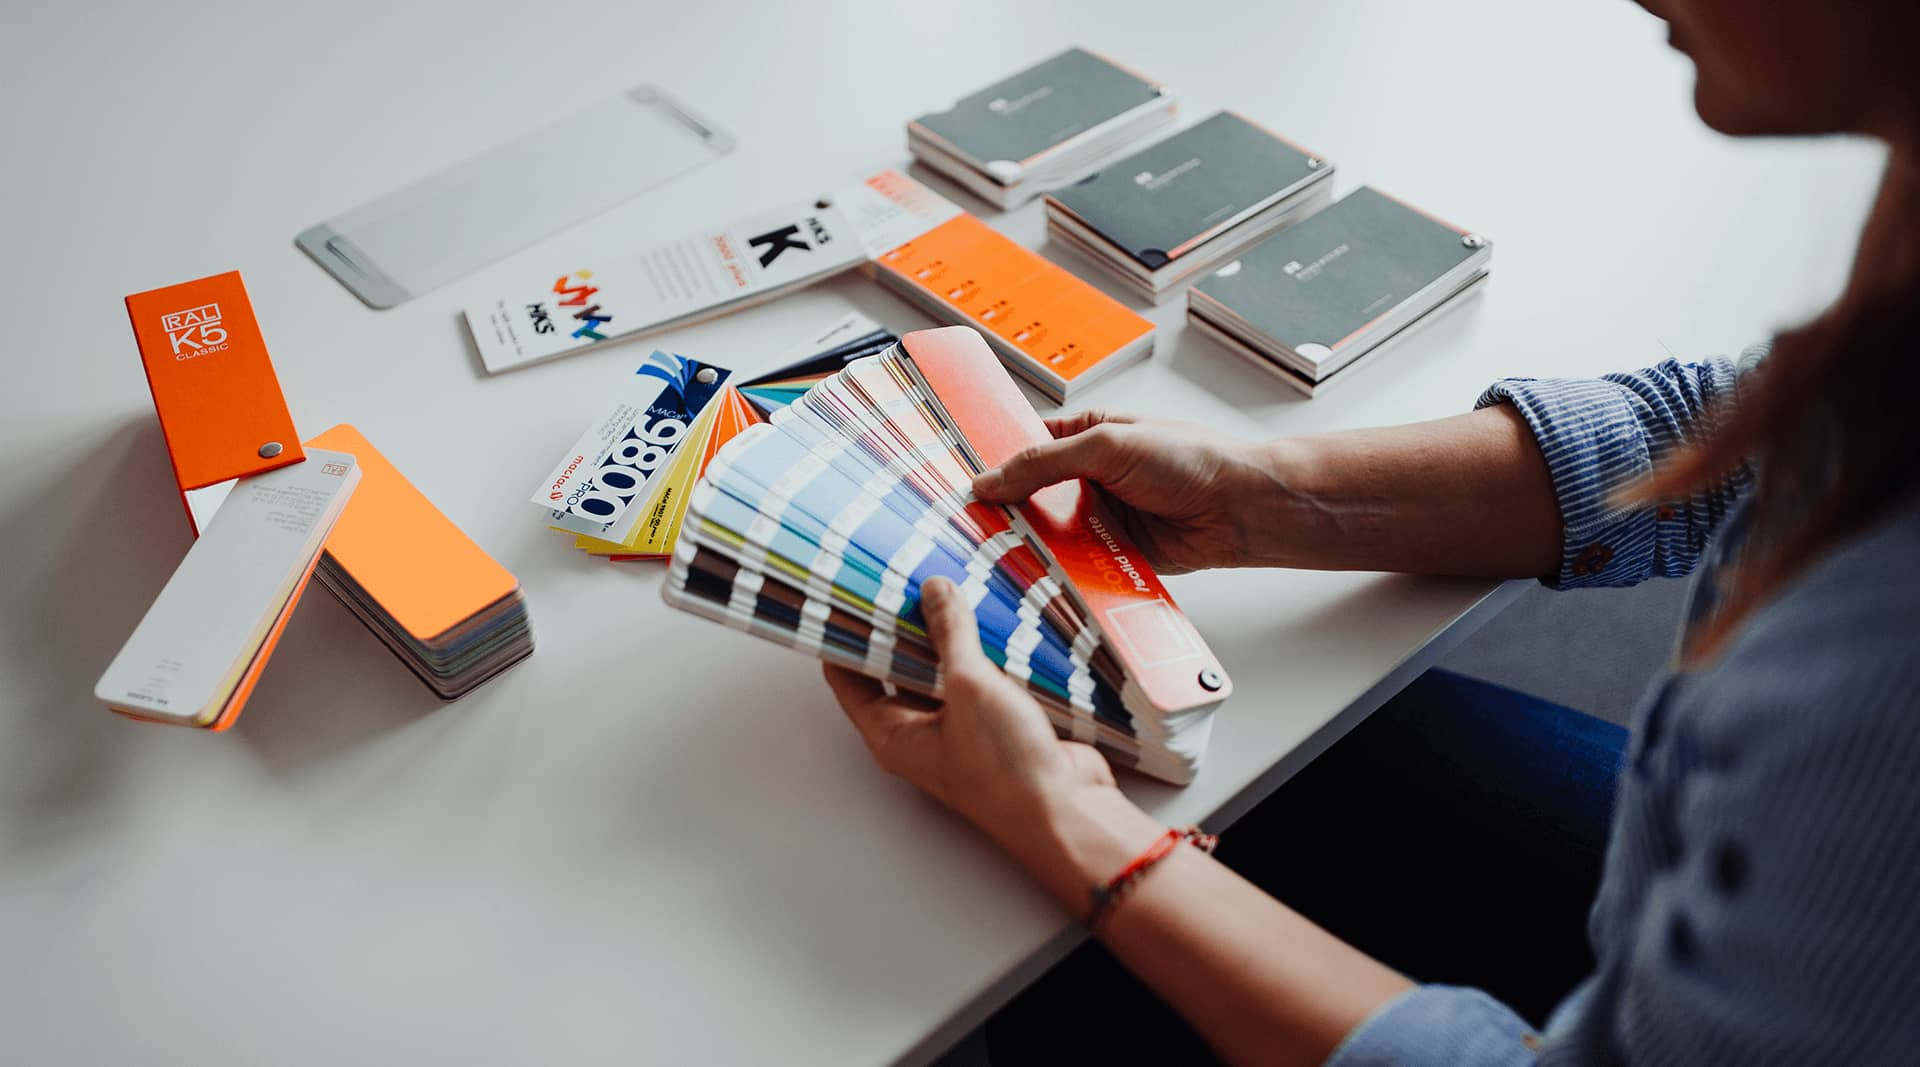 Ein Agentur Mitarbeiter wählt die Corporate Design Farben in einem Farbfächer aus